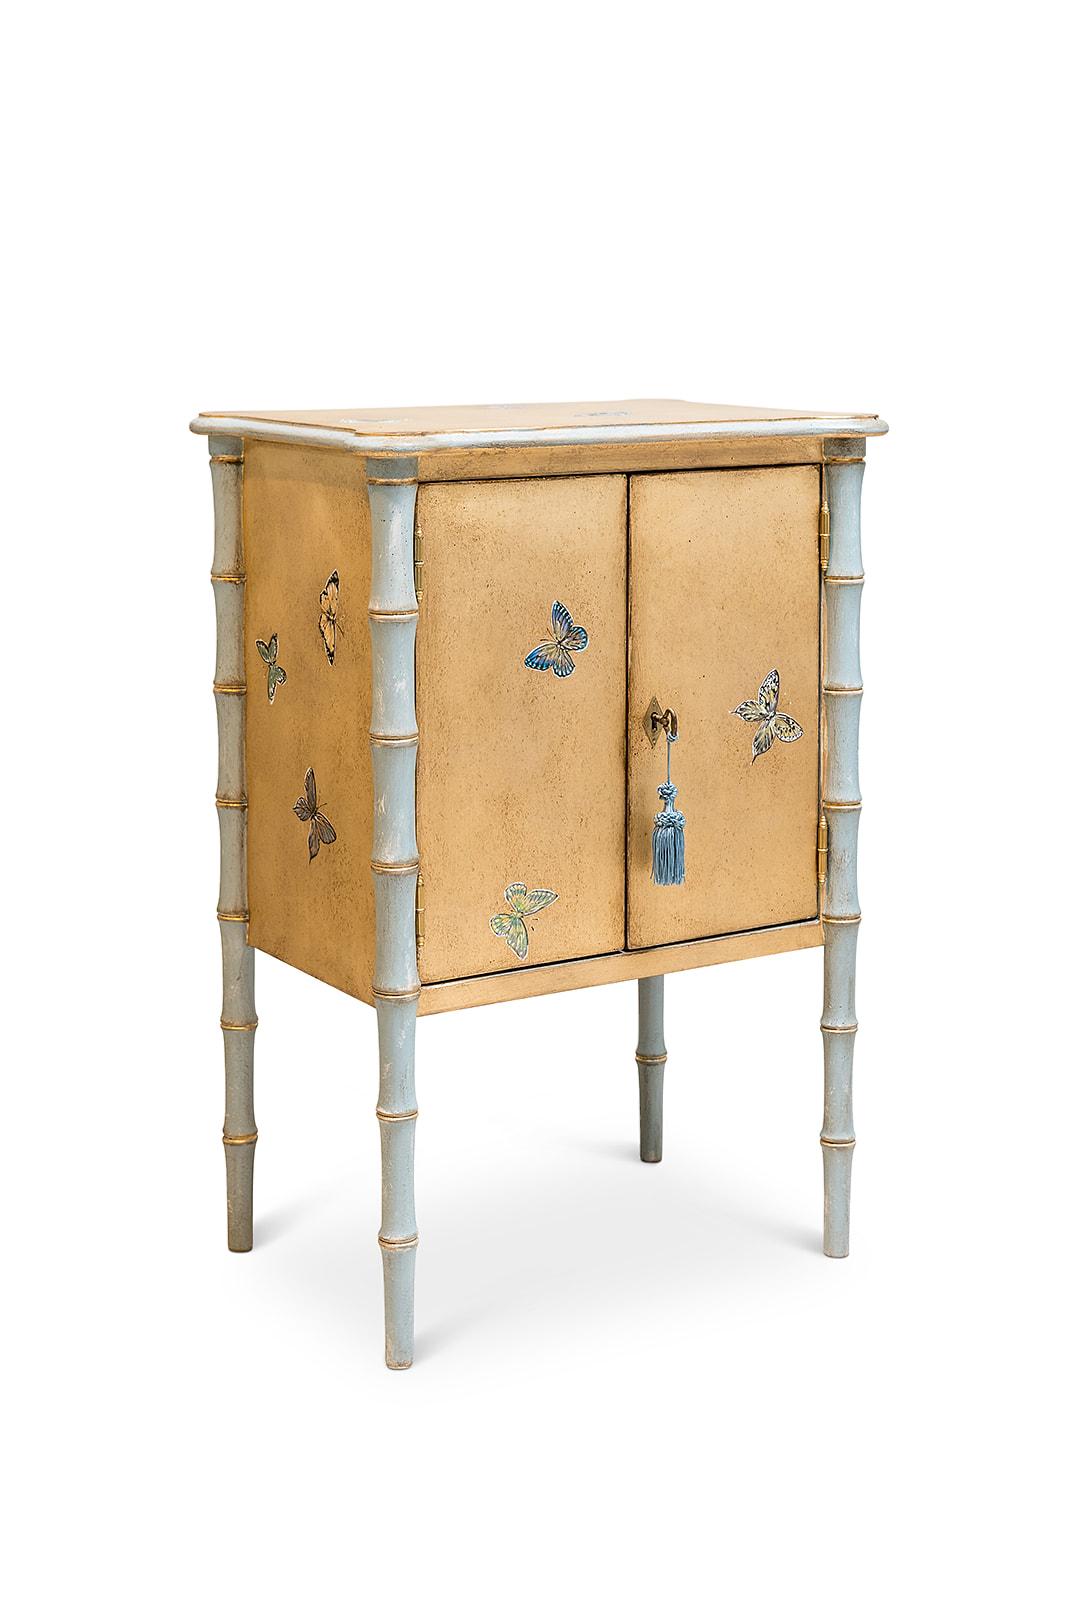 Aus unserer Hand-Painted Furniture Collection stellen wir Ihnen den Bamboo Lombardia Nightstand in Gold mit Schmetterlingsdekor vor. 
Wusstest du, dass eine Gruppe von Schmetterlingen ein Kaleidoskop genannt wird? 
Der Name kommt von der